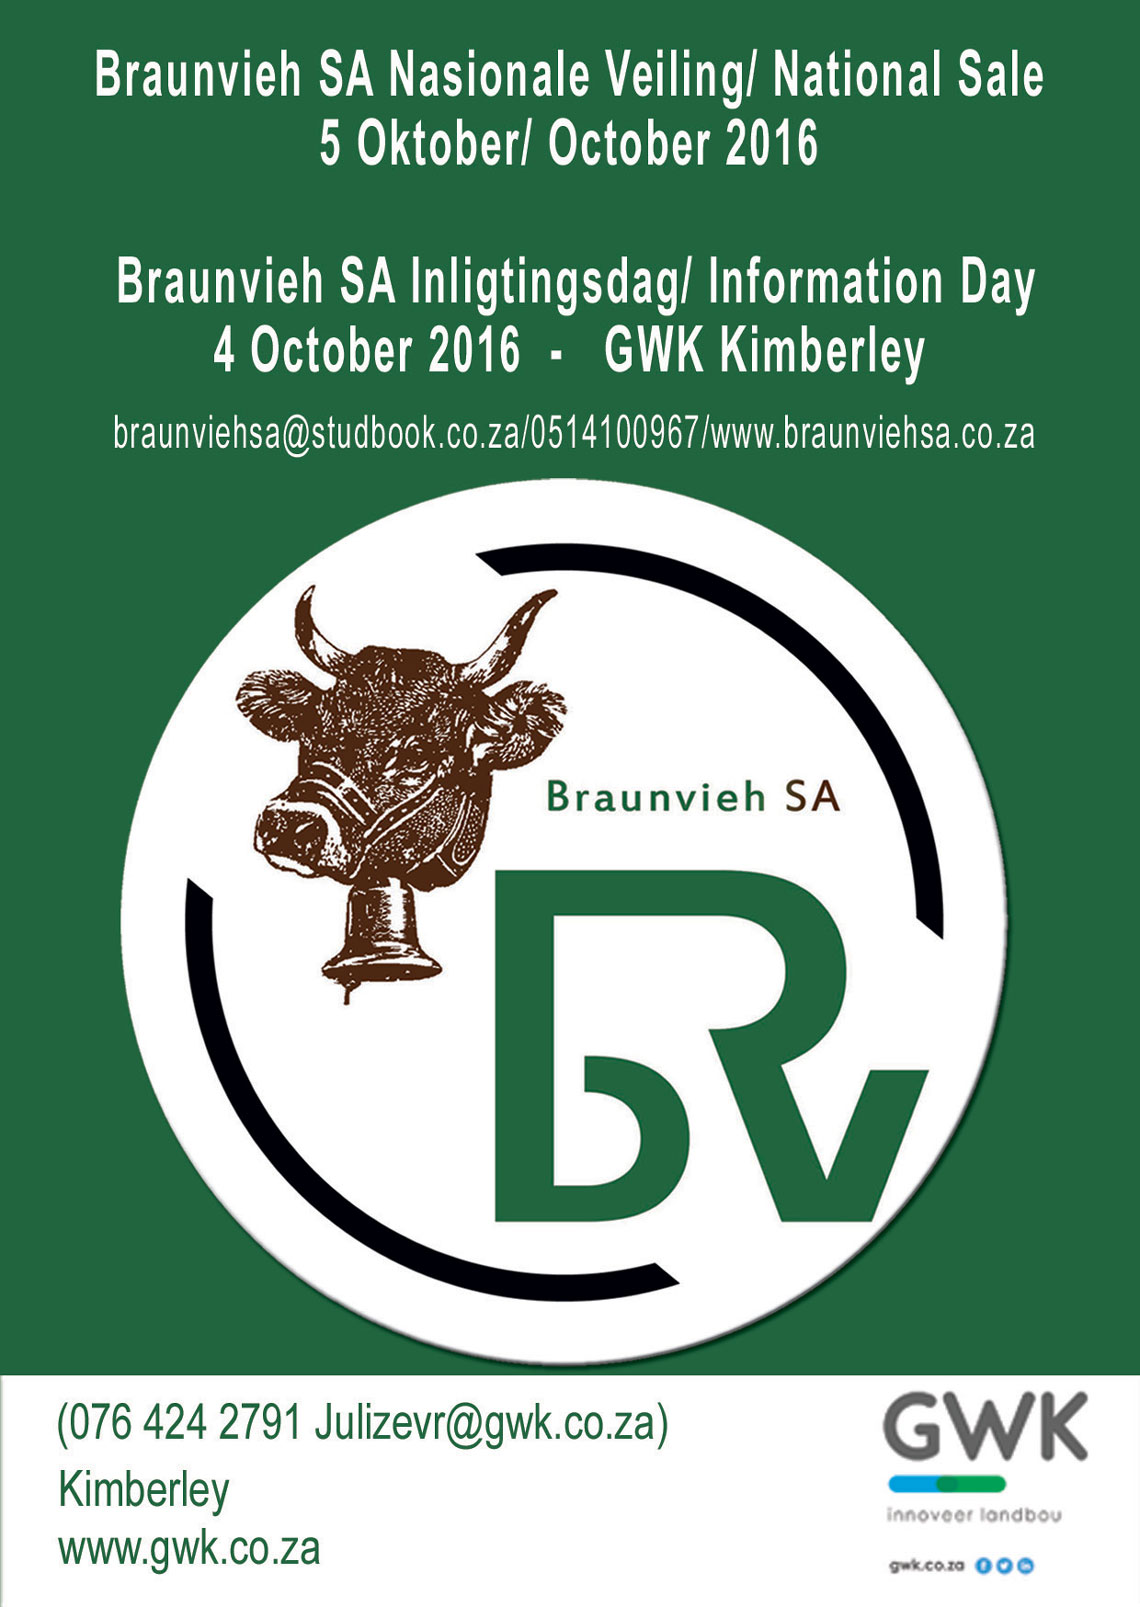 Braunvieh SA National Sale 2016